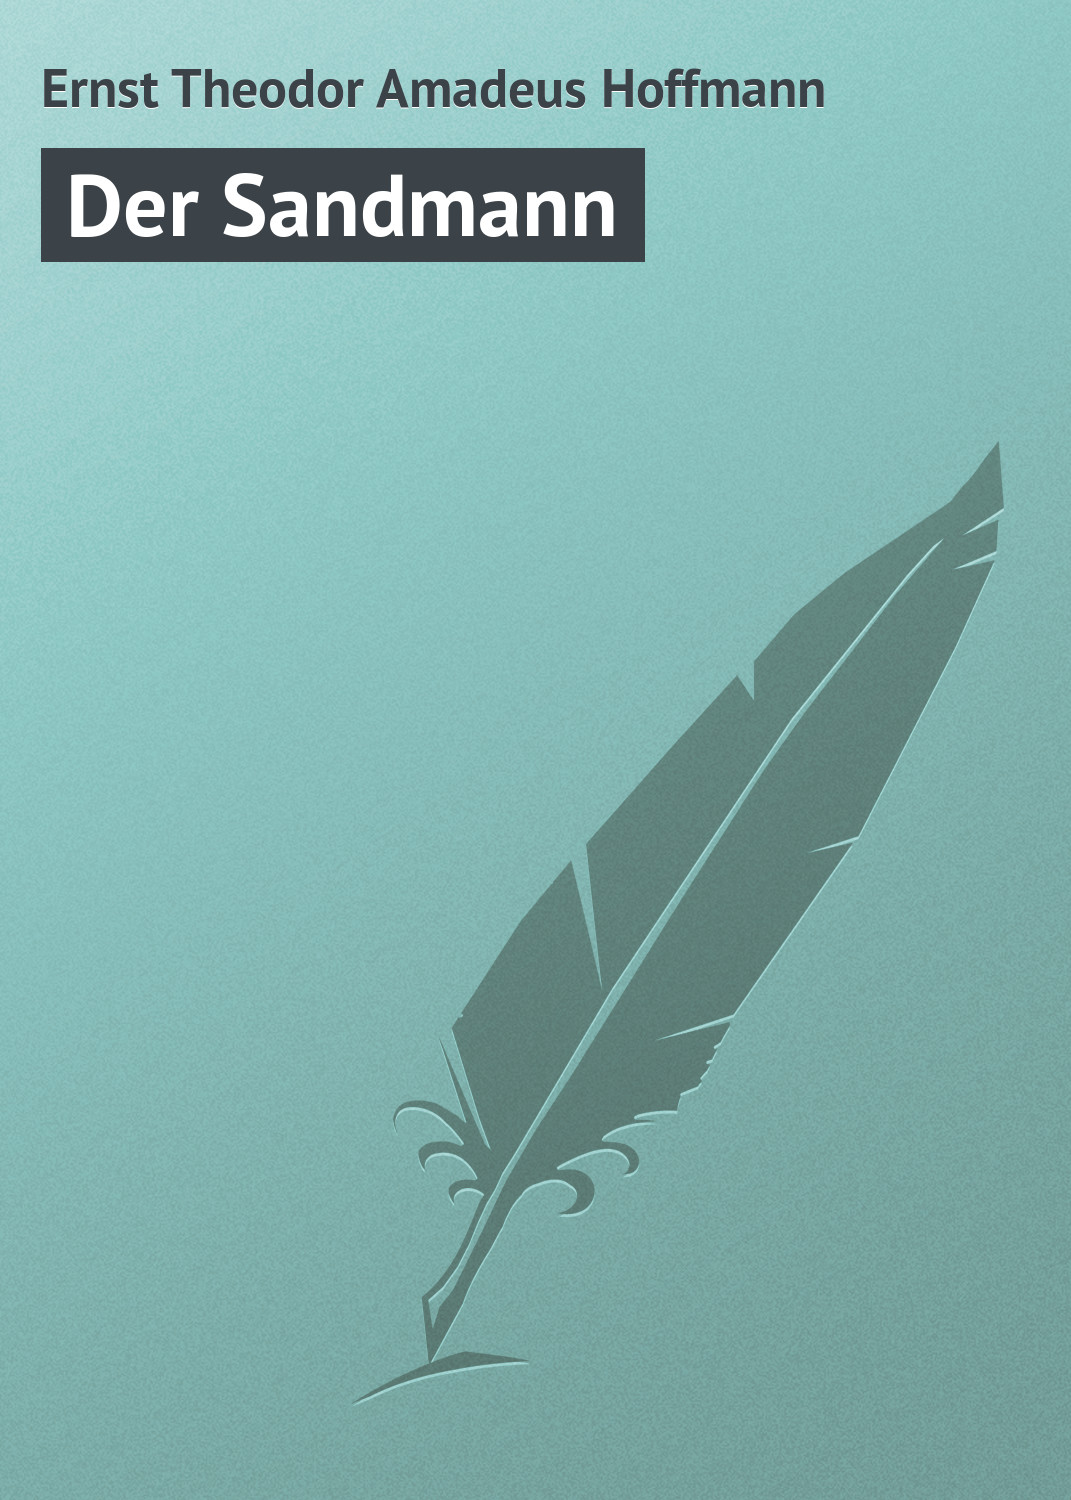 Книга Der Sandmann из серии , созданная Ernst Theodor, может относится к жанру Зарубежная старинная литература, Зарубежная классика. Стоимость электронной книги Der Sandmann с идентификатором 21105126 составляет 5.99 руб.